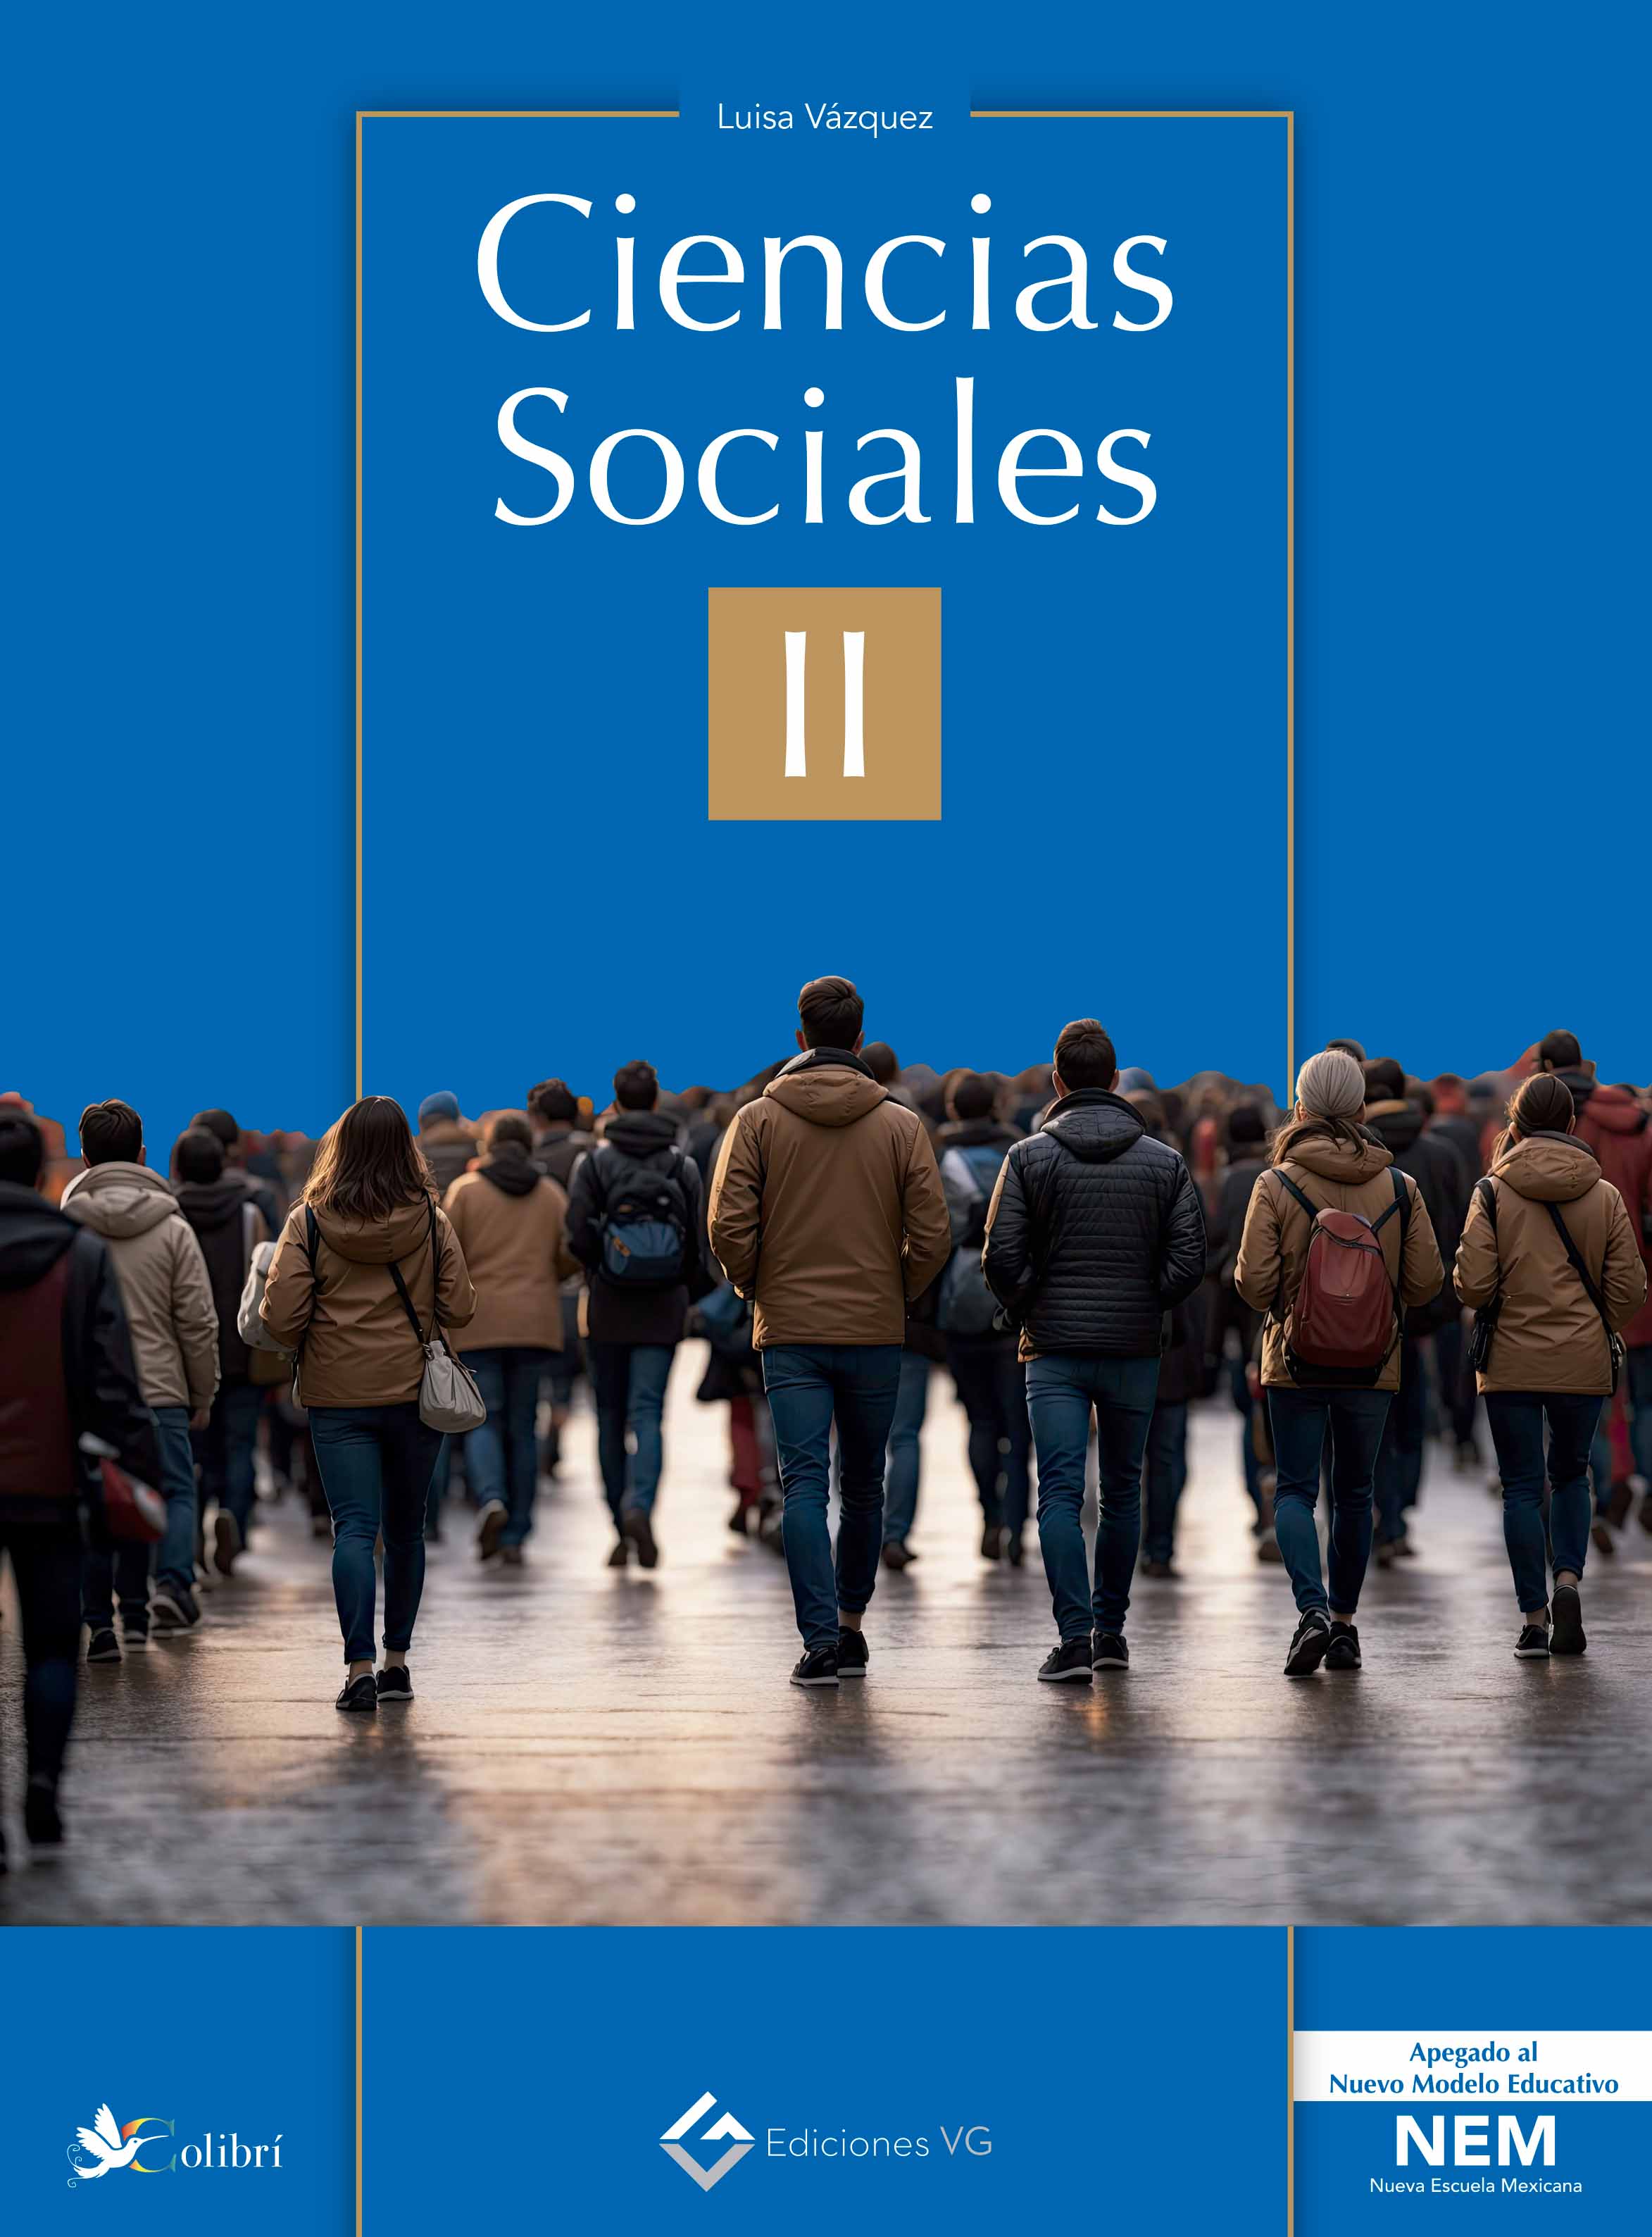 Course Image Ciencias Sociales II